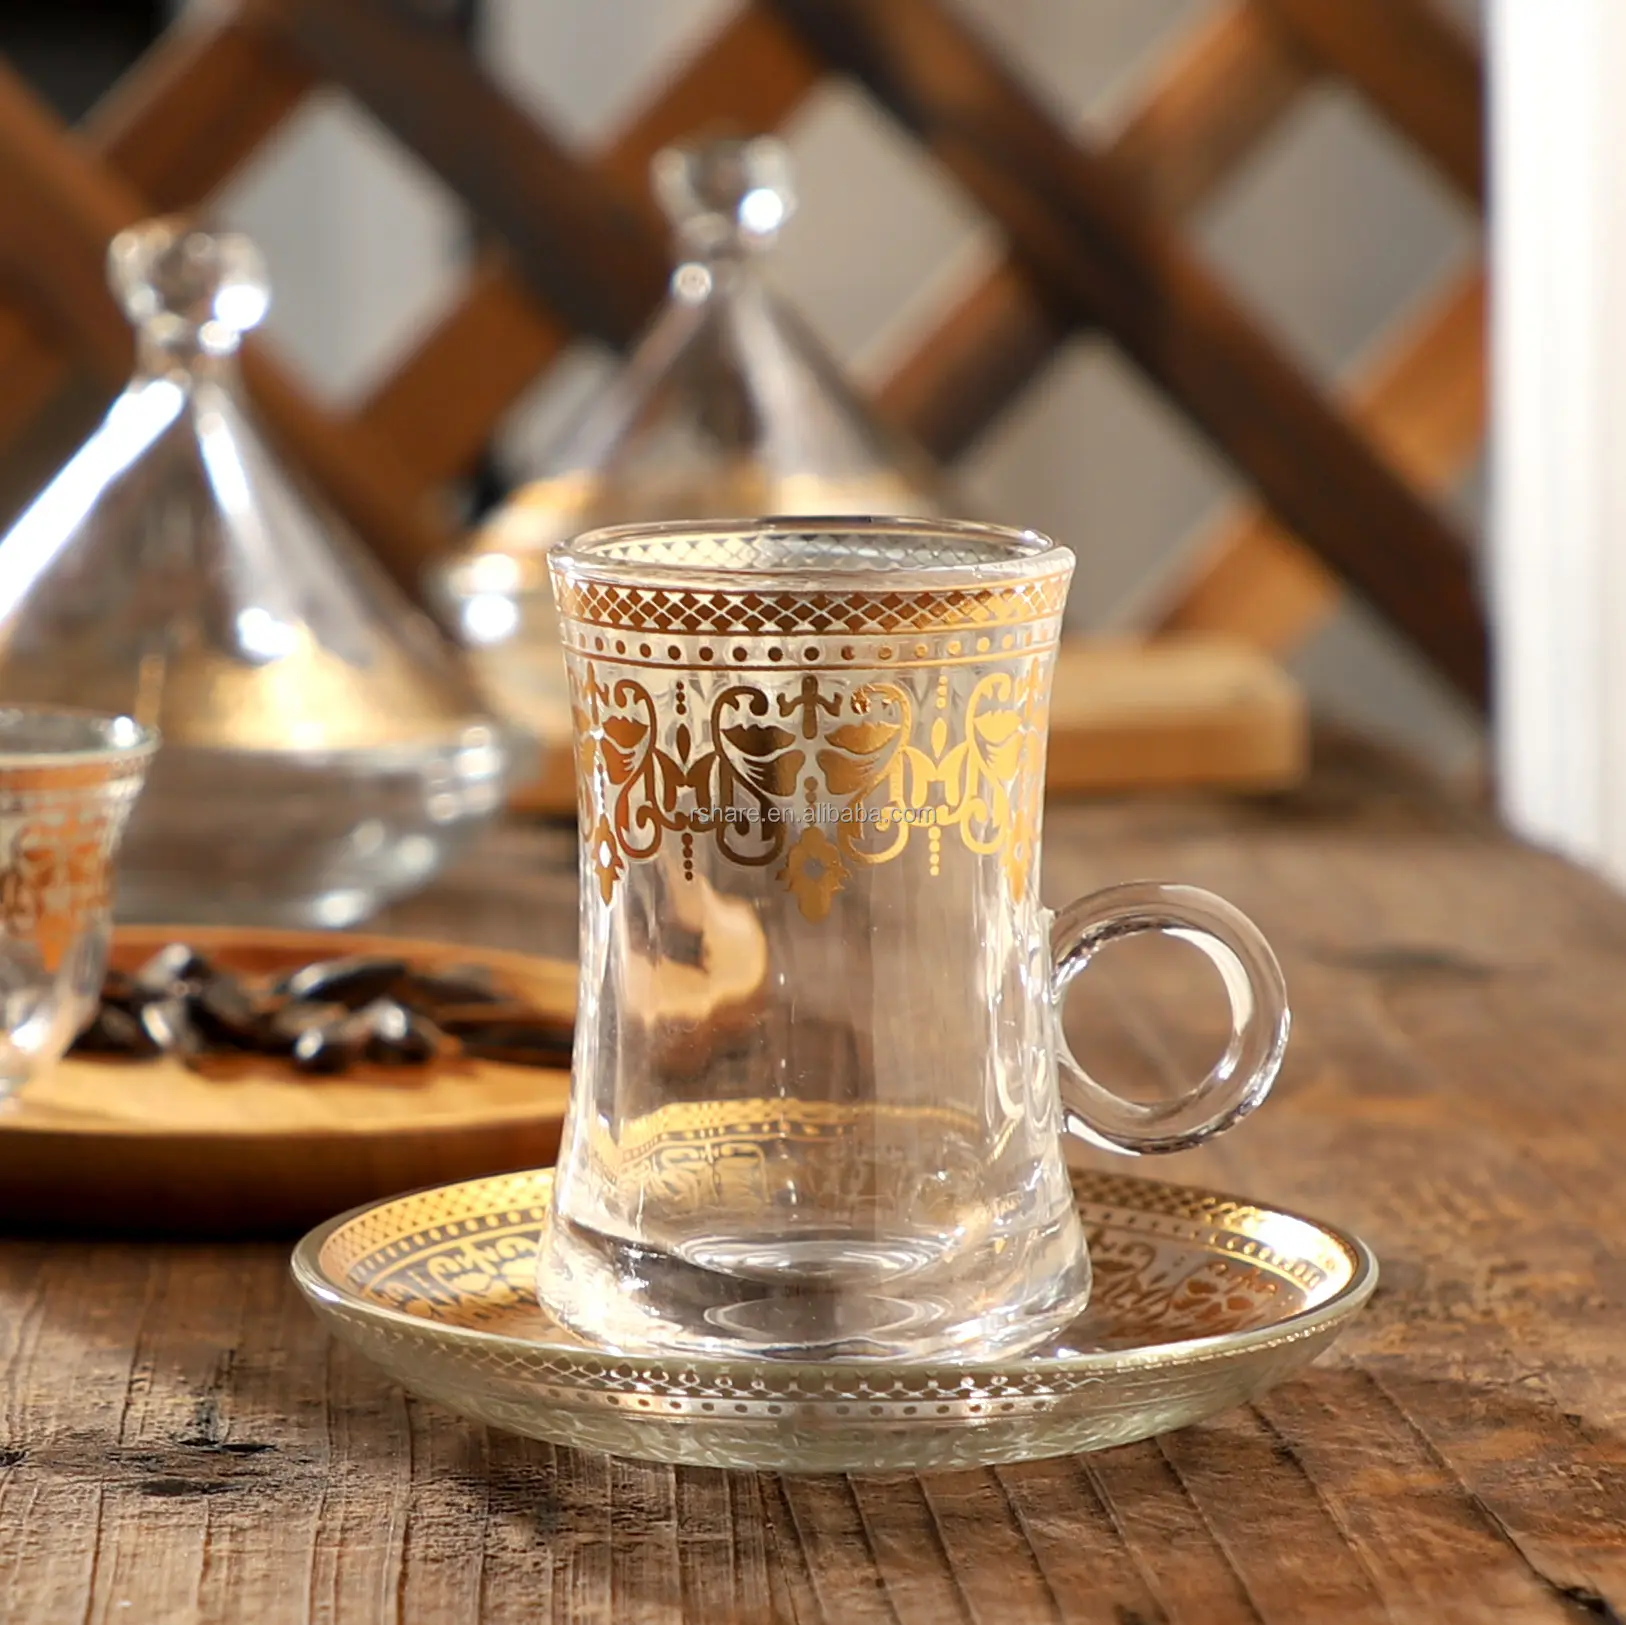 ชุดแก้วกาแฟตุรกีพร้อมจานรองเอวบางชุดถ้วยกาแฟเอสเพรสโซ่6ใบและจานรอง6ใบ